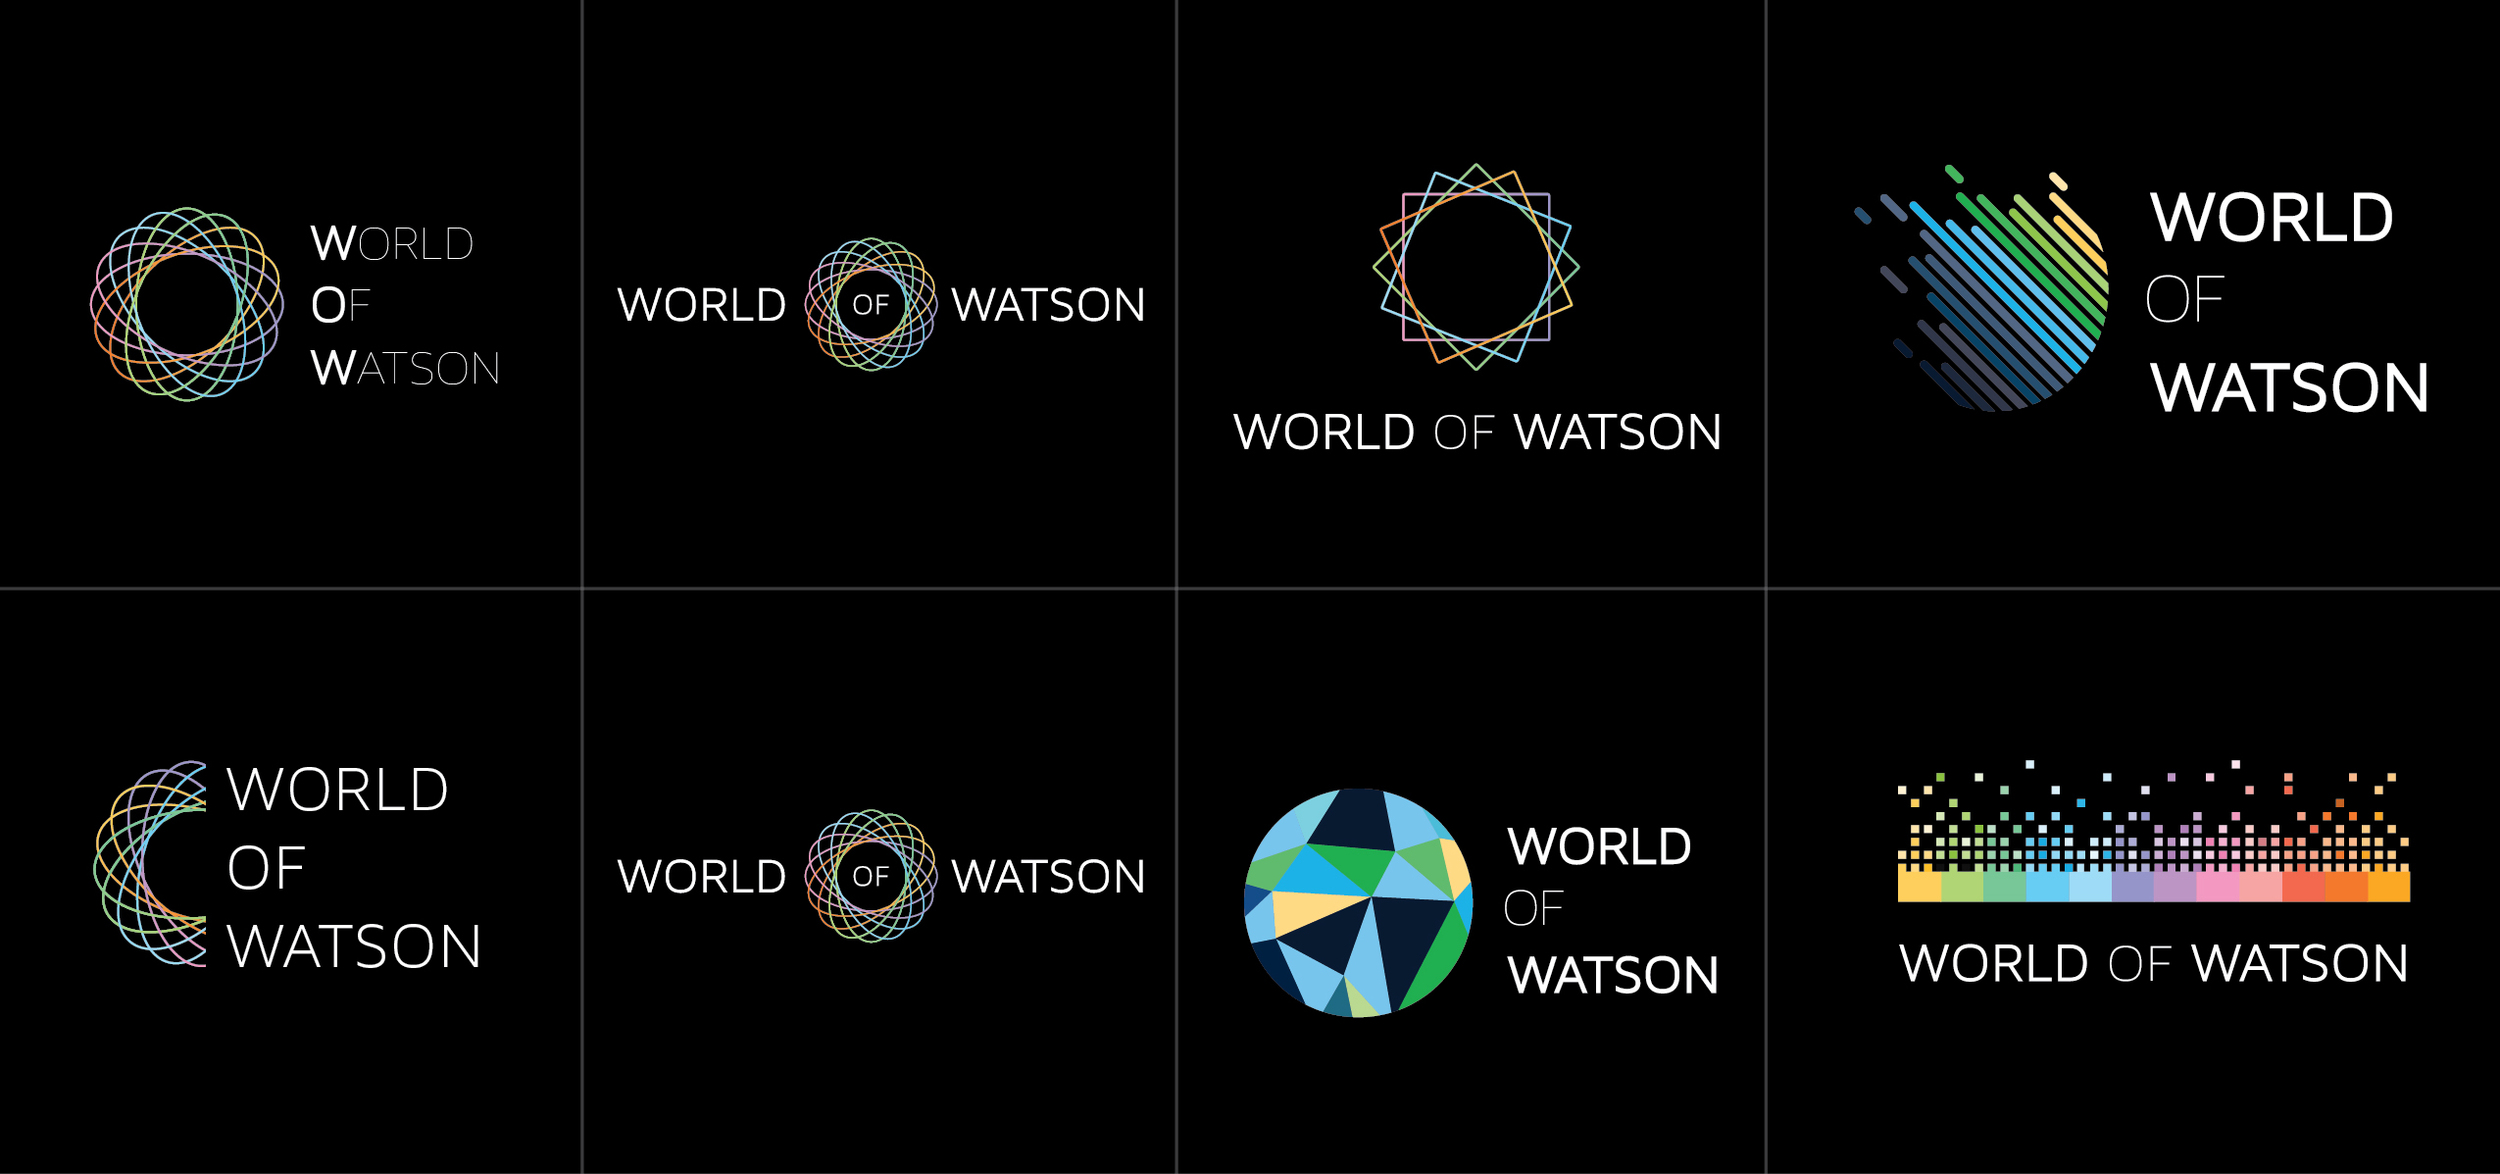 WorldOfWatson_Logos-01.jpg